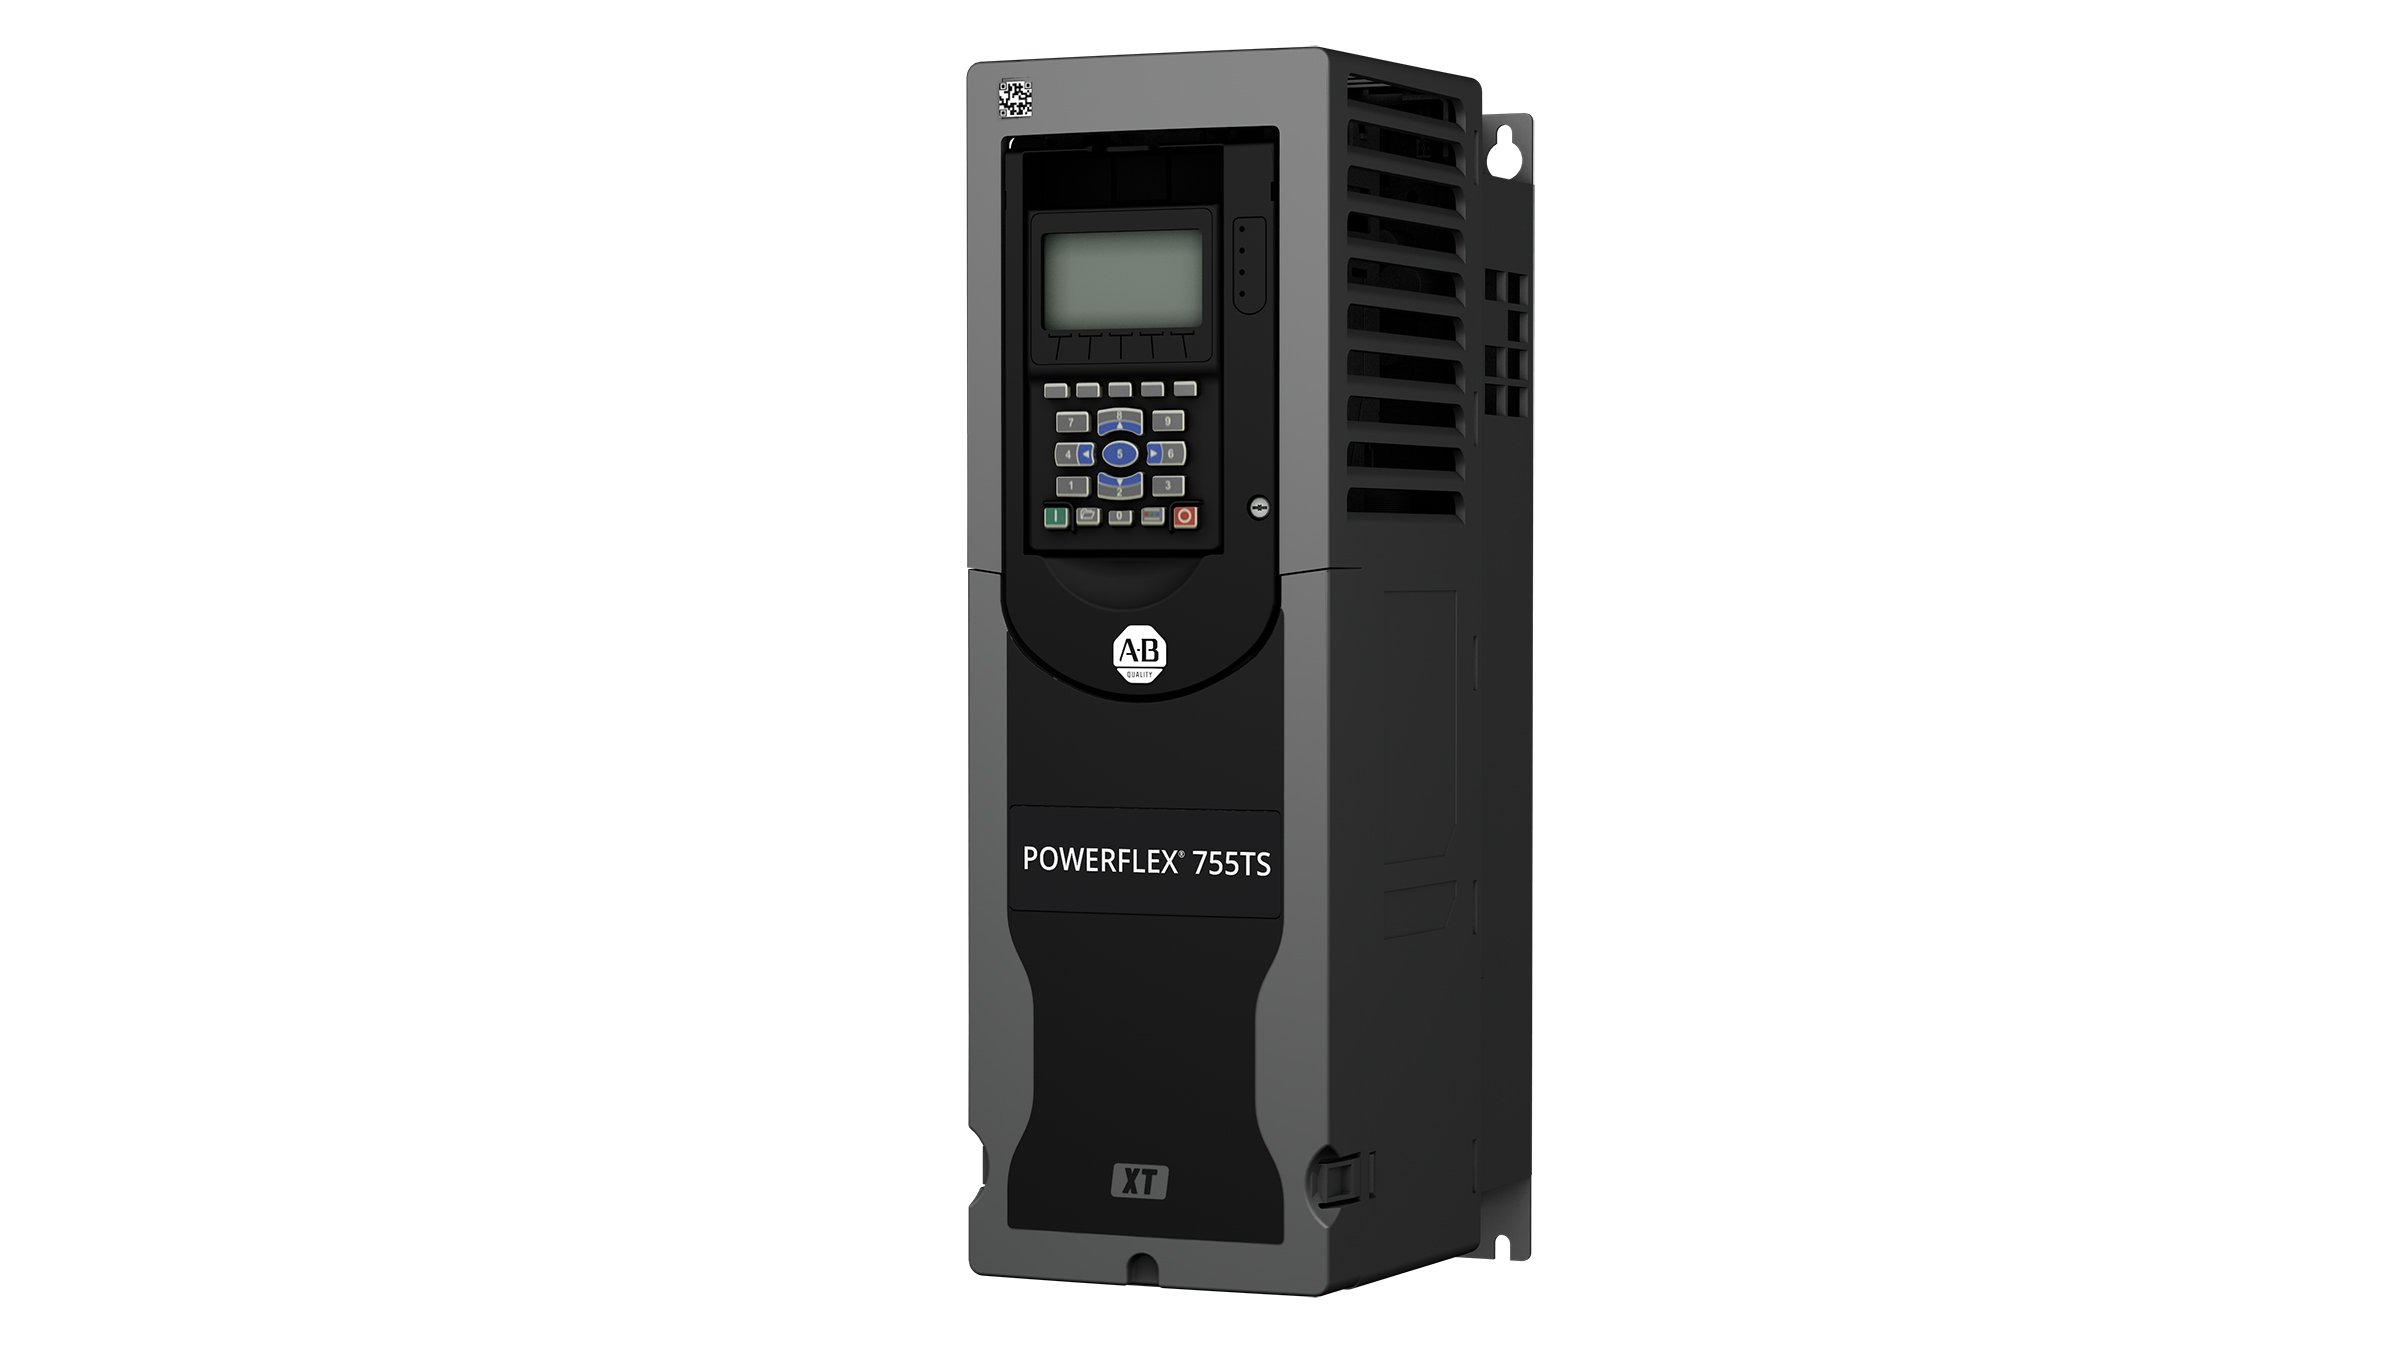 Variador de frecuencia PowerFlex 755TS rectangular gris oscuro con botones frontales y pantalla y diseño especial de protección contra gases corrosivos (XT)